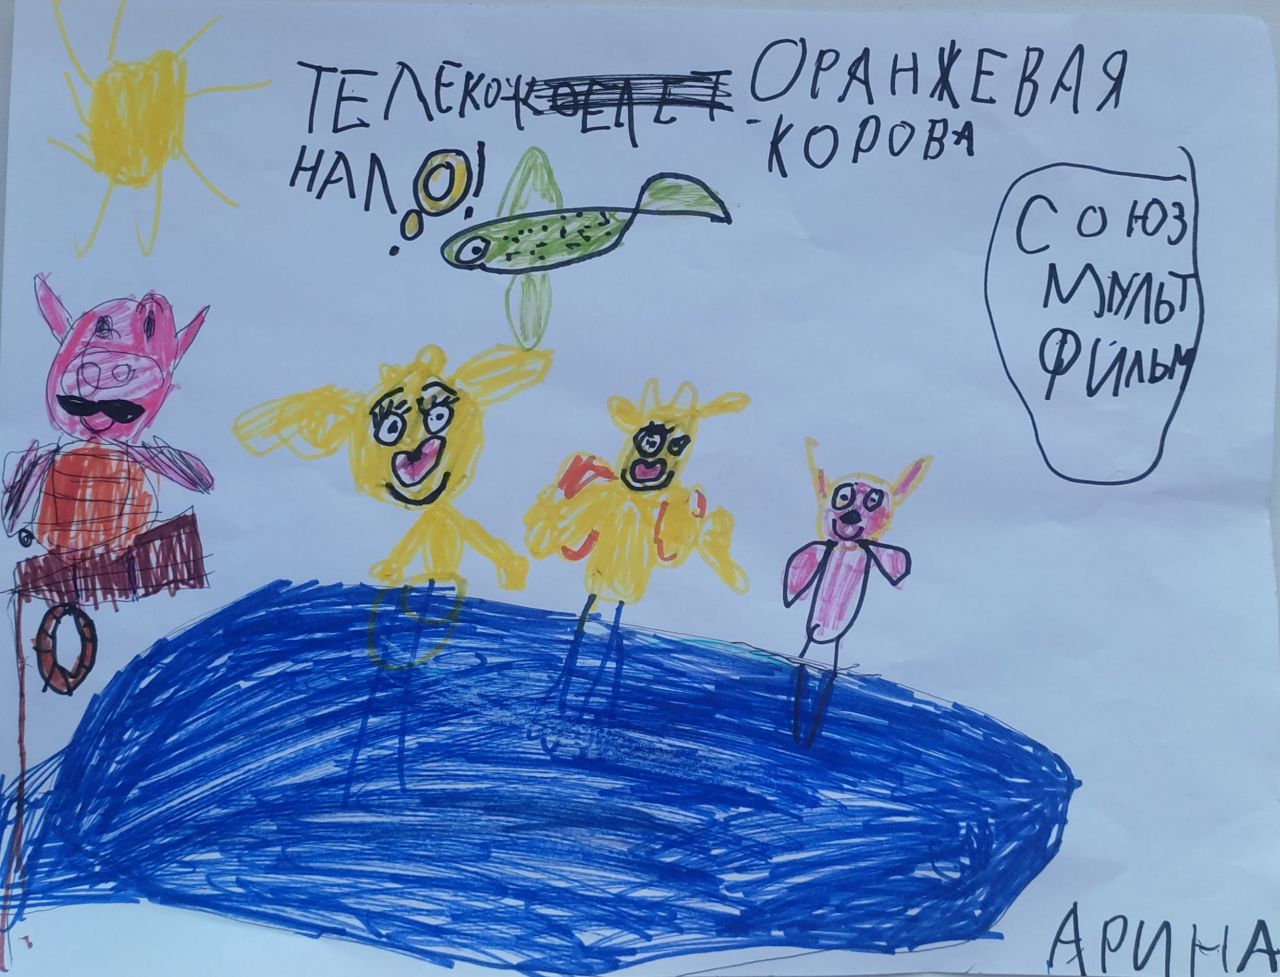 Арина Ячменькова 6 лет